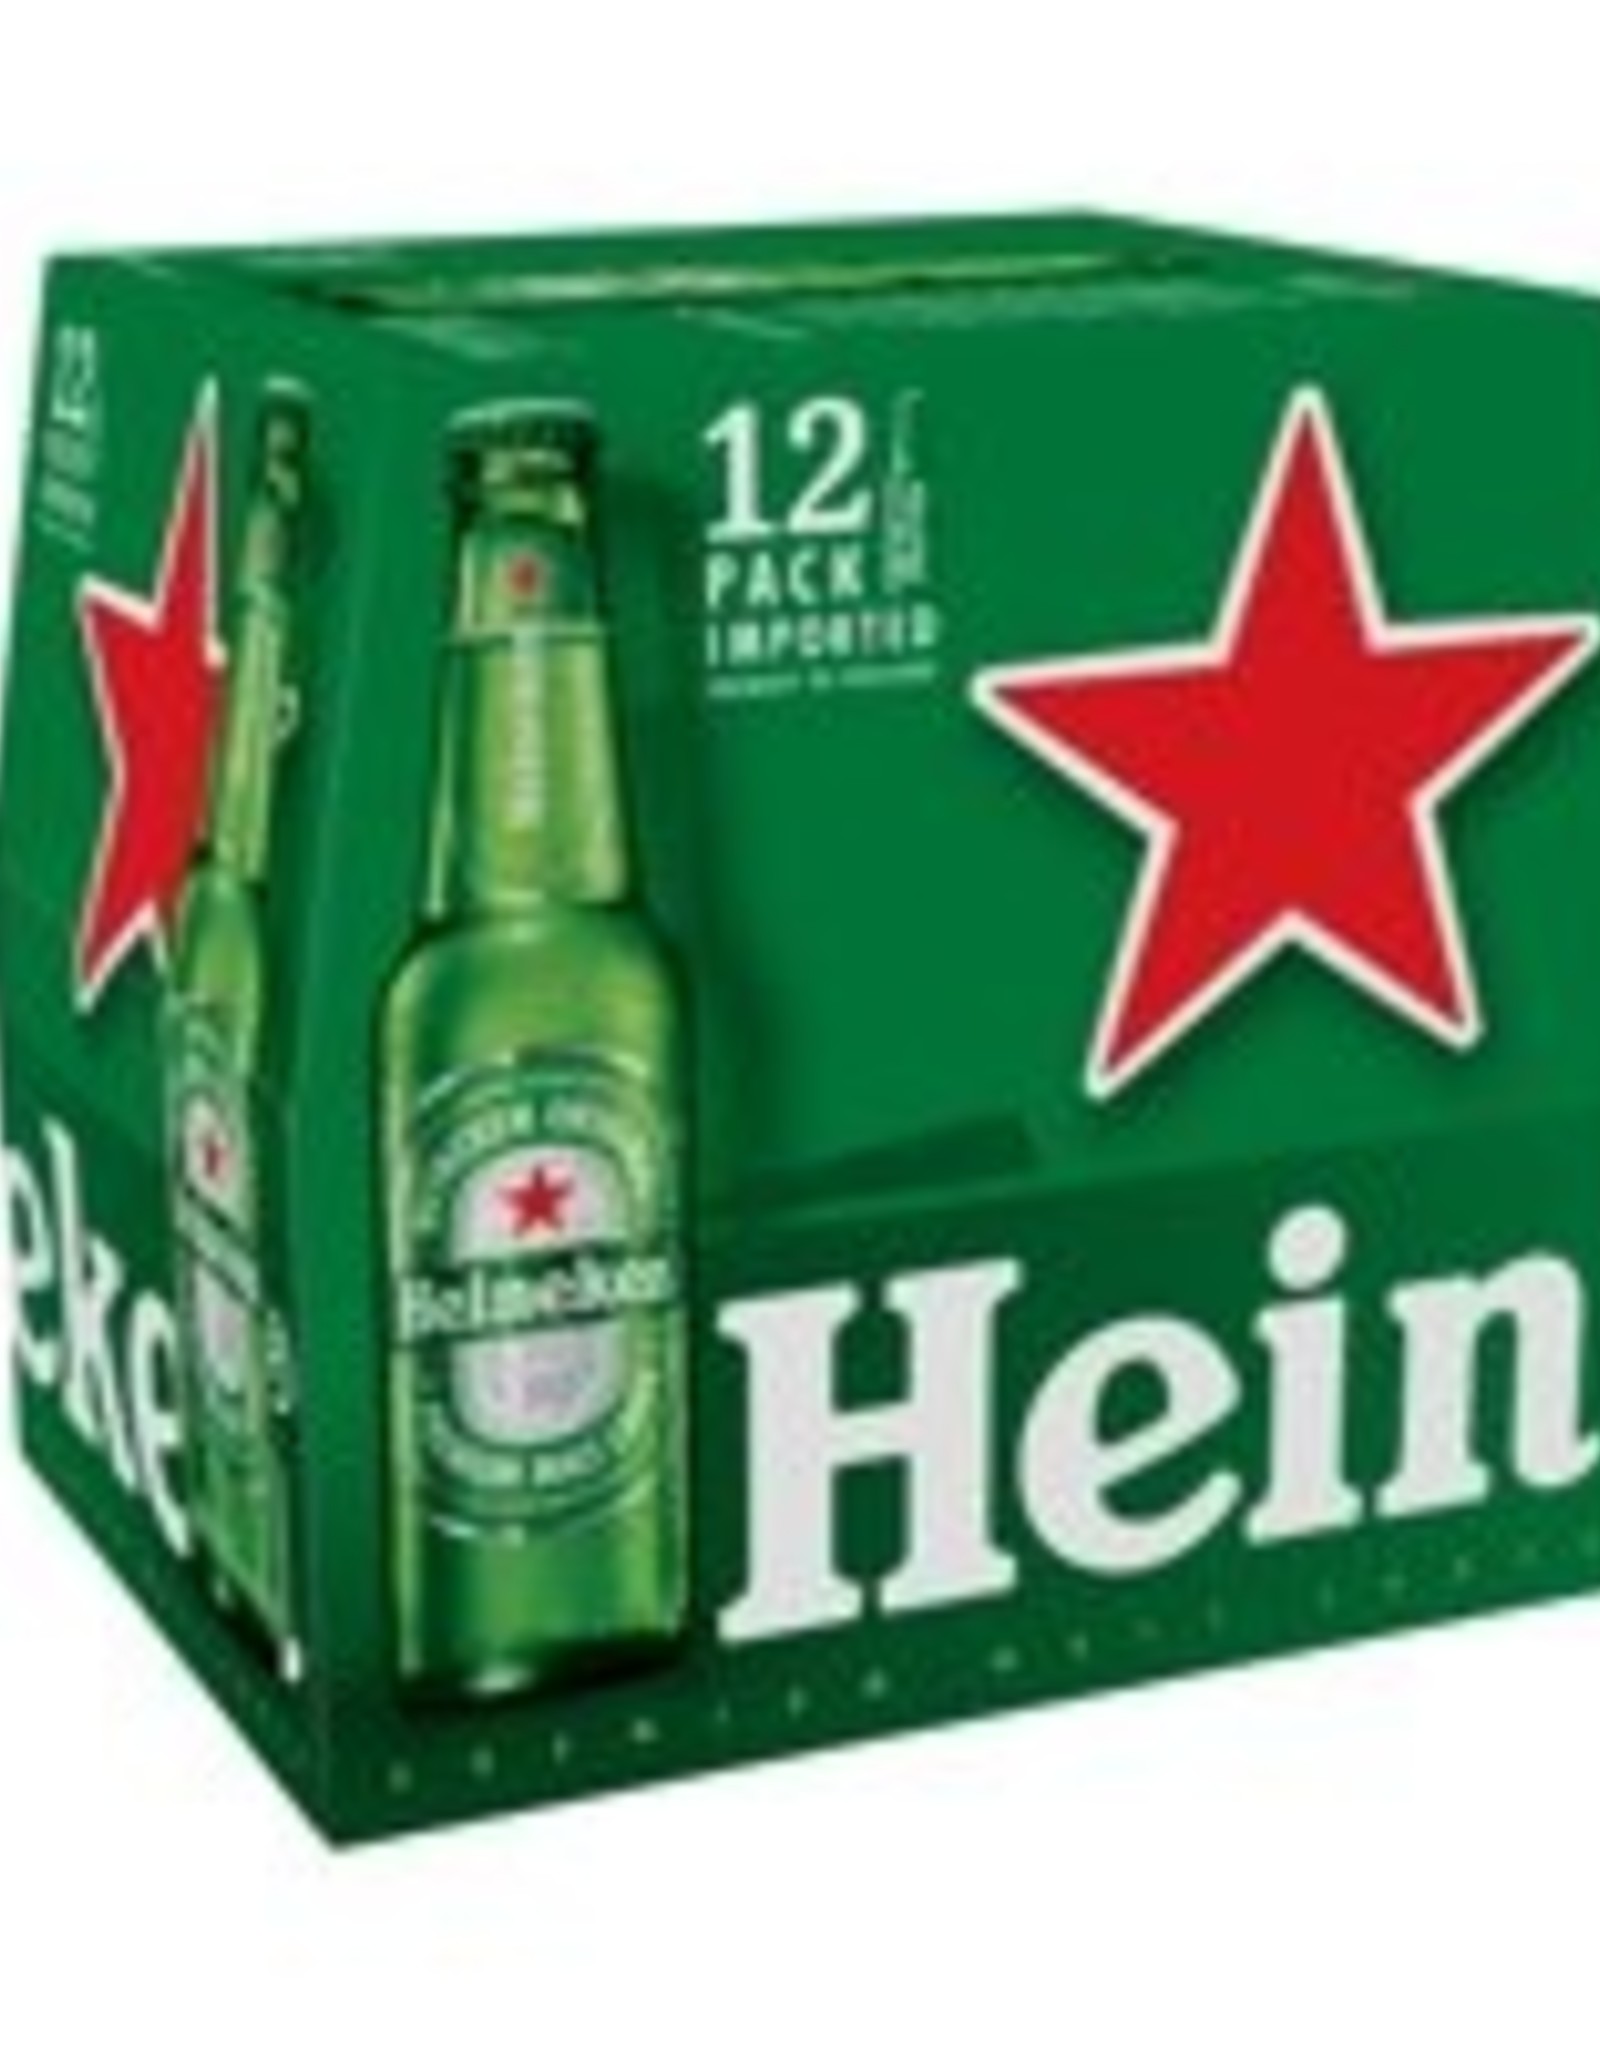 Heineken 12x12 oz bottles